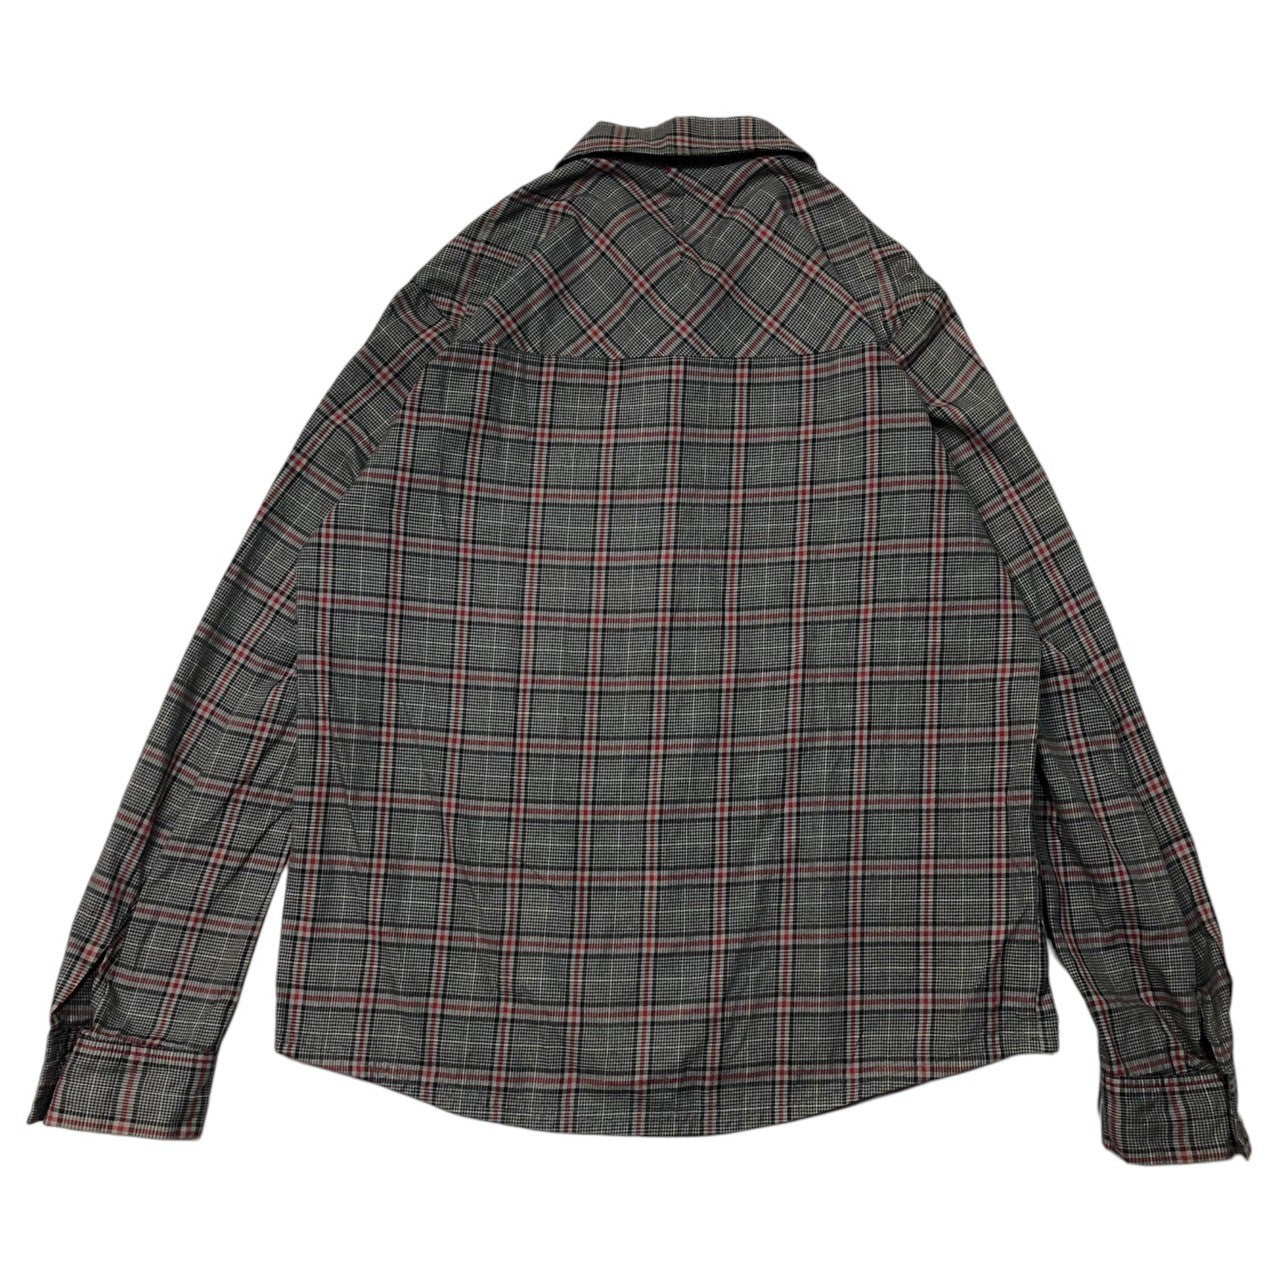 終売品[レア 初期] ナンバーナイン シャツジャケット サイズ2 トップス